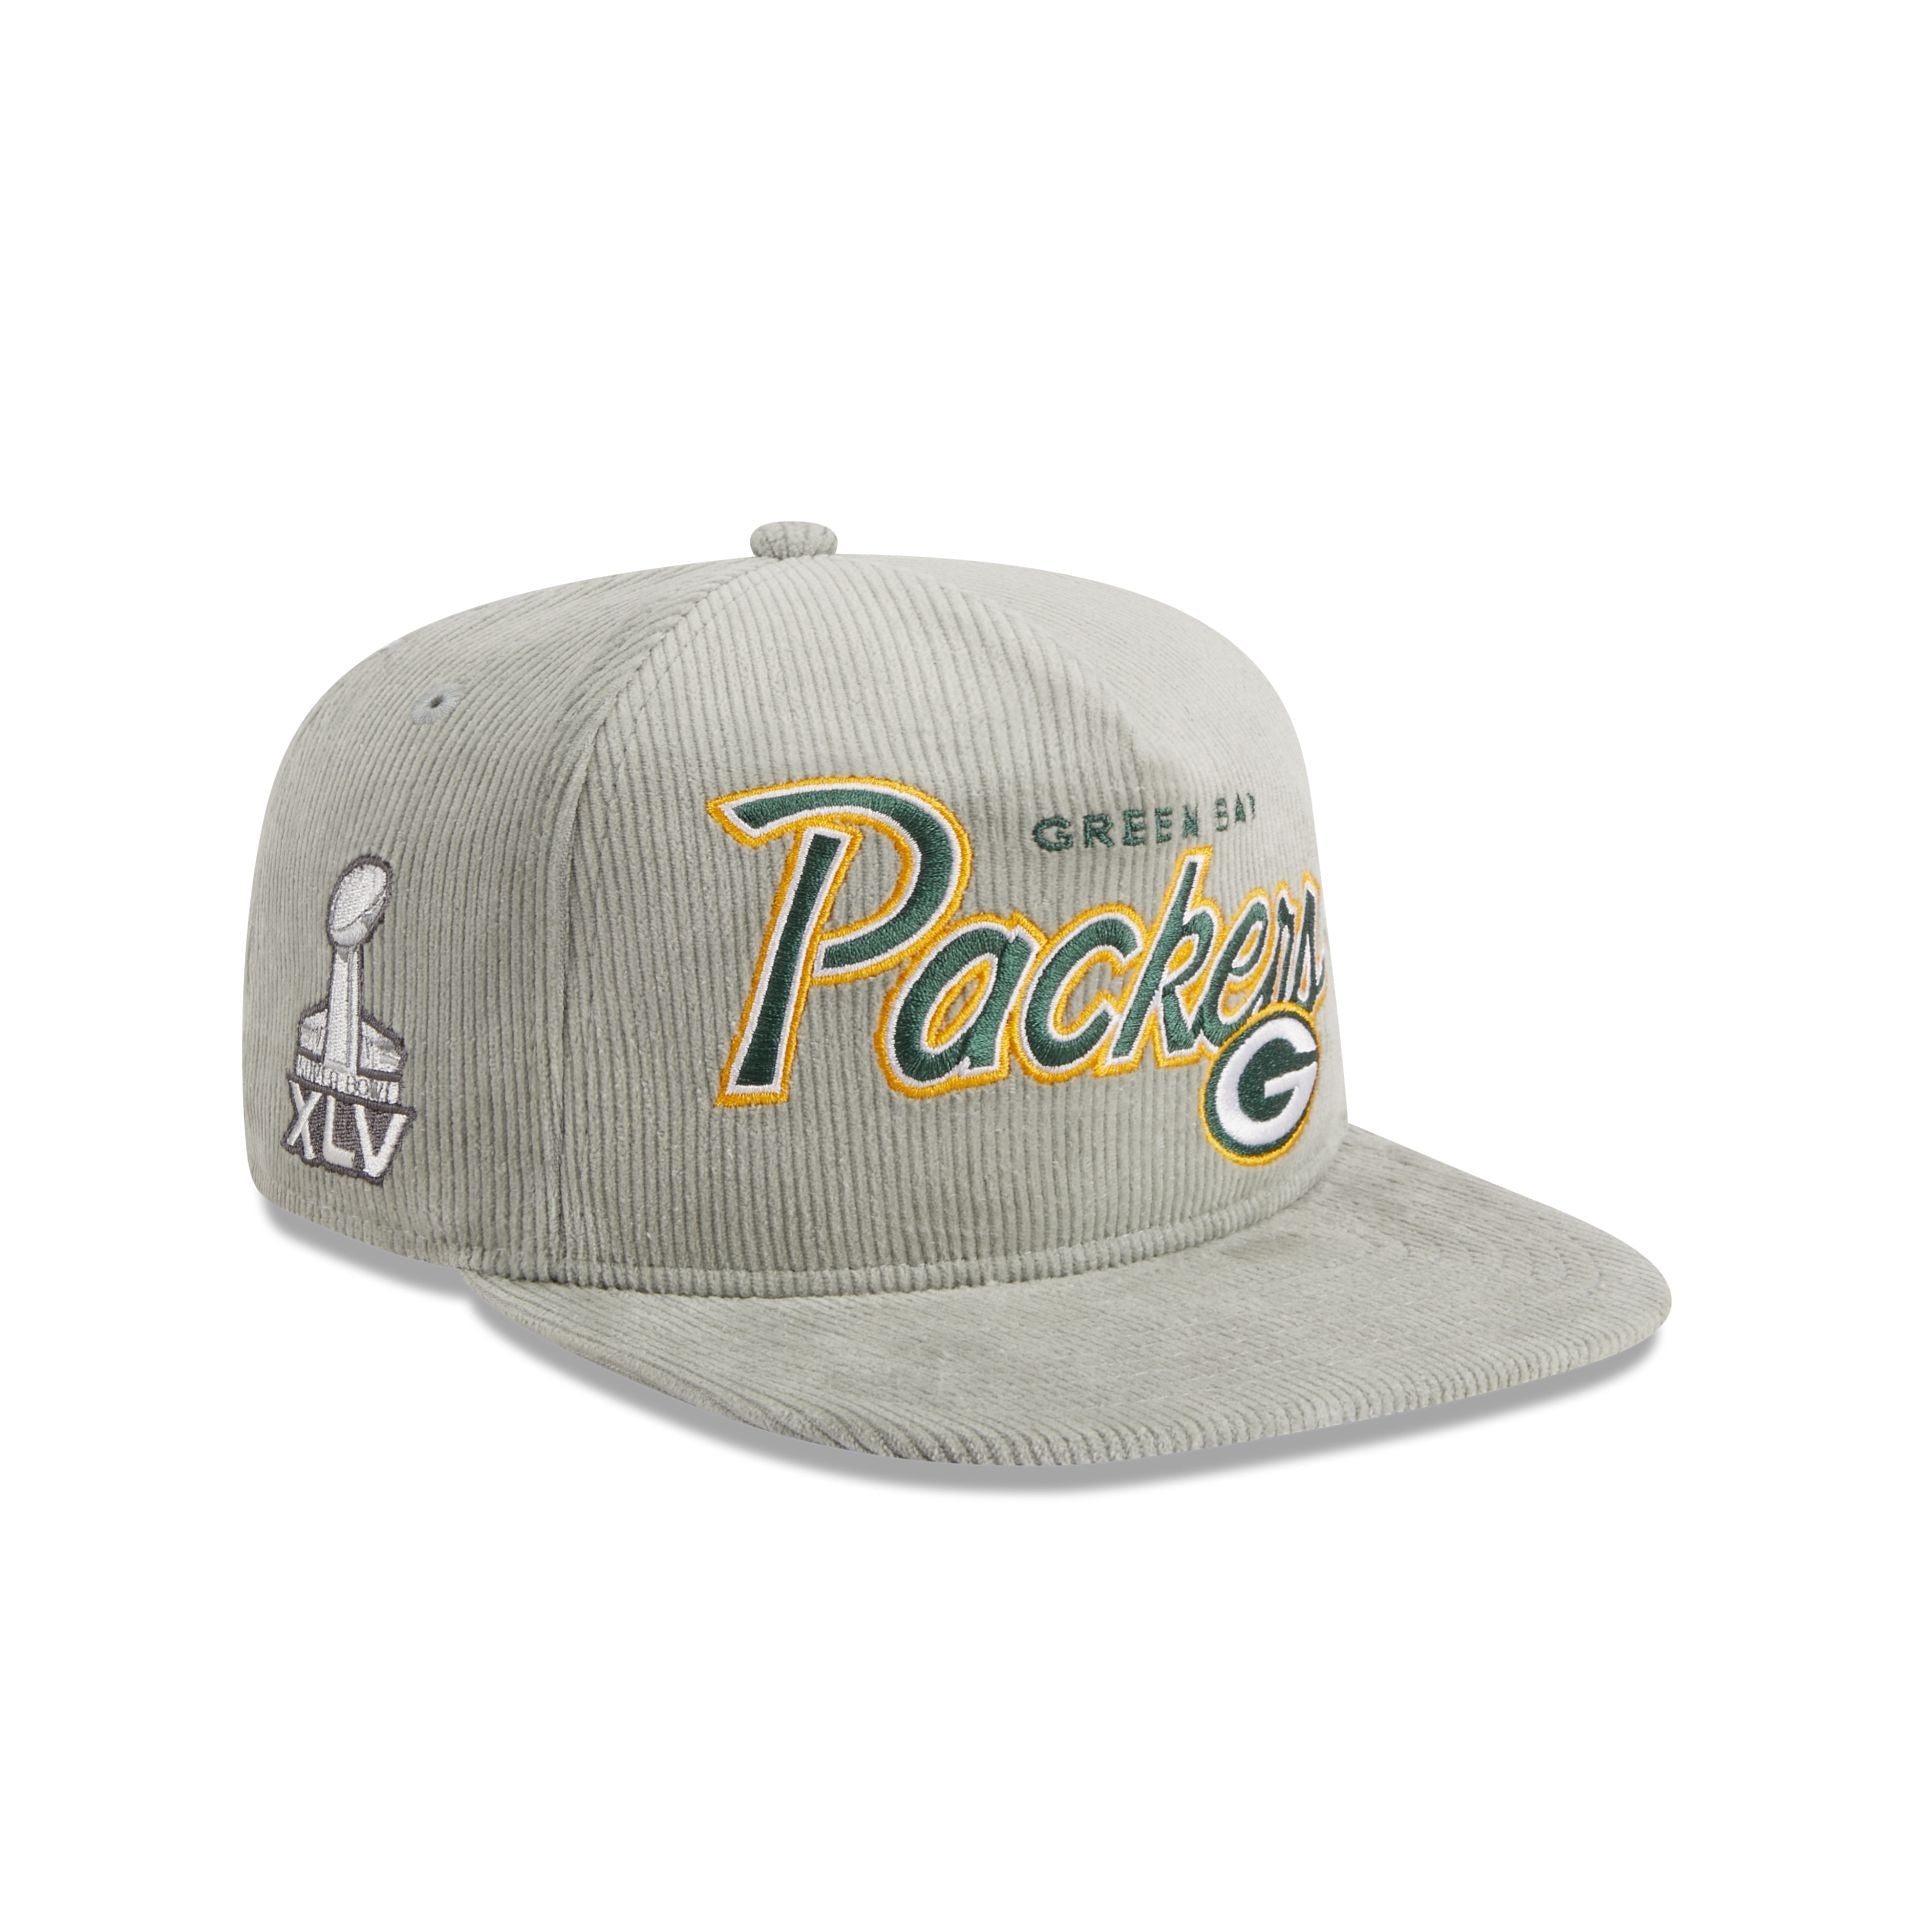 Green Bay Packers Hats u0026 Caps – New Era Cap